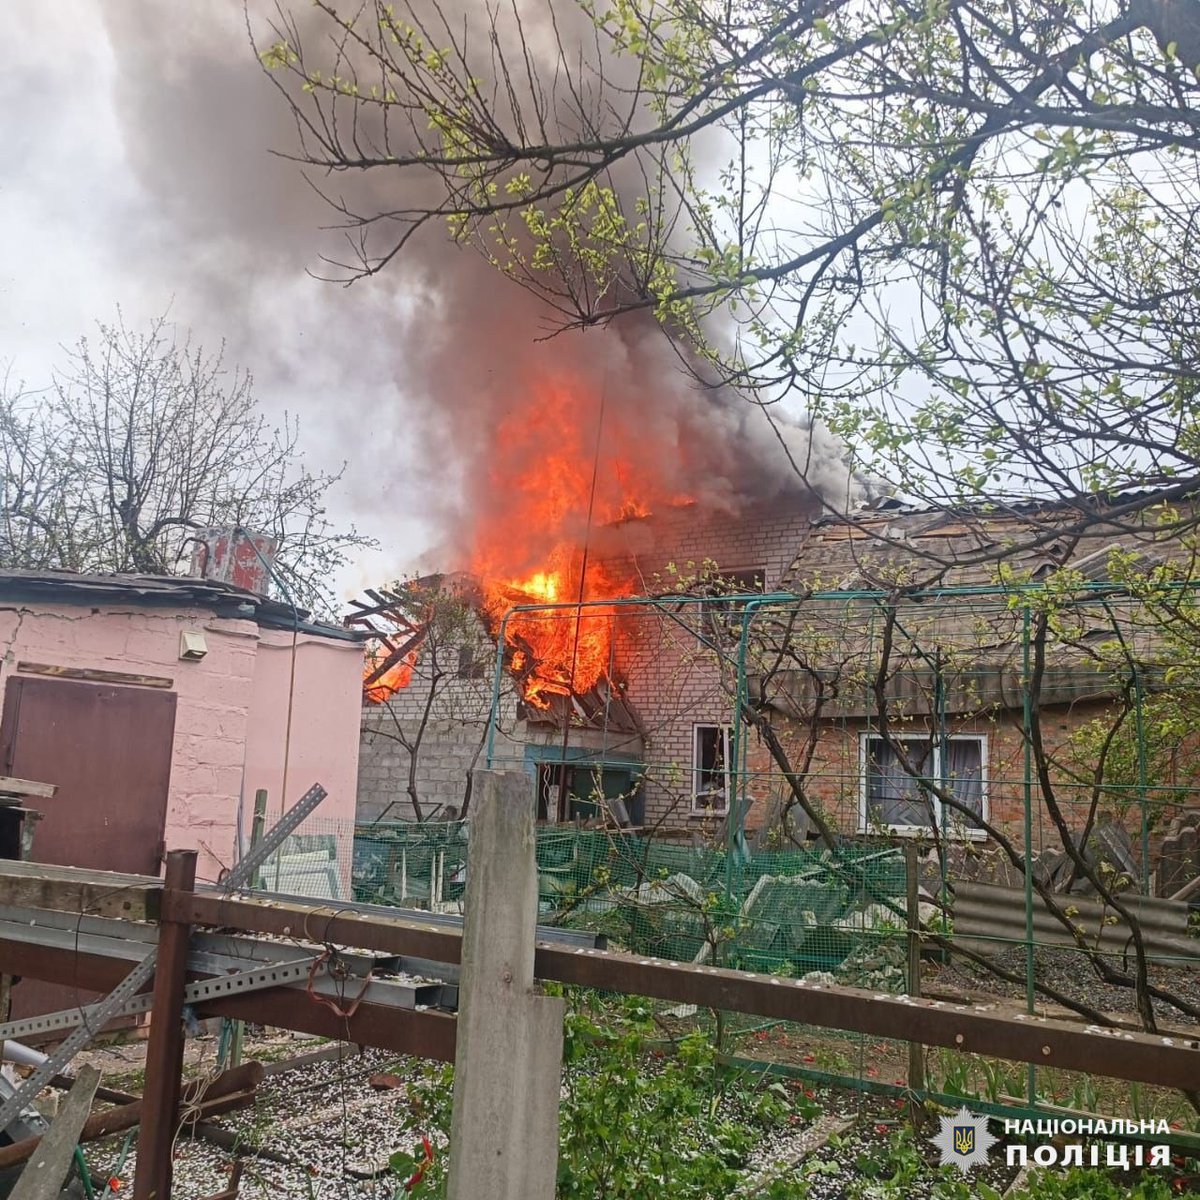 3 crianças e outra pessoa feridas em resultado de ataque aéreo russo em Derhachi, na região de Kharkiv